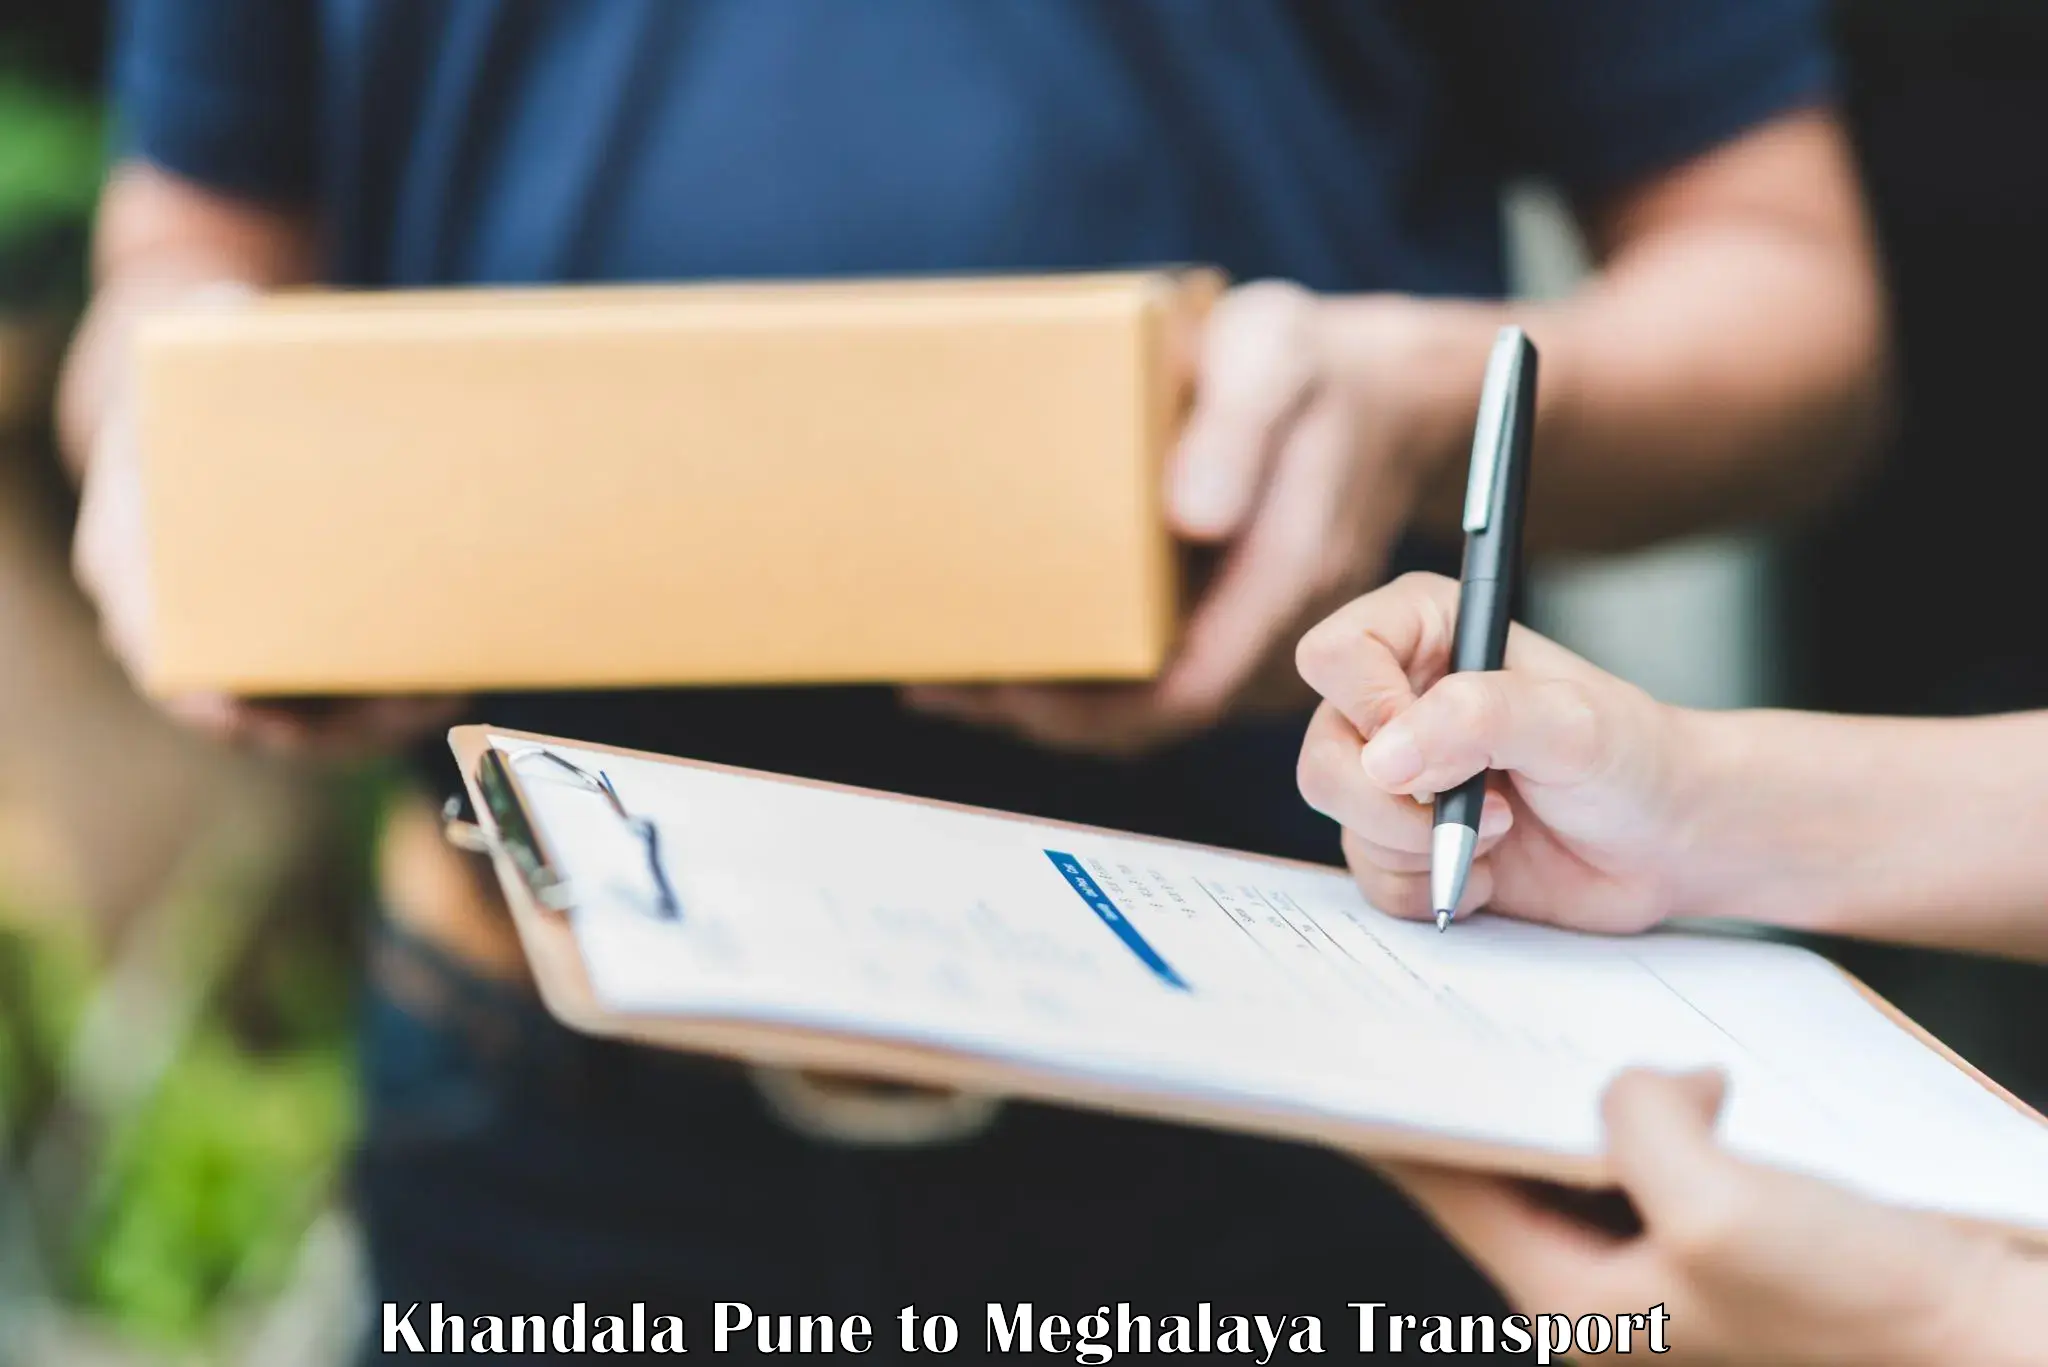 Nearby transport service Khandala Pune to Meghalaya